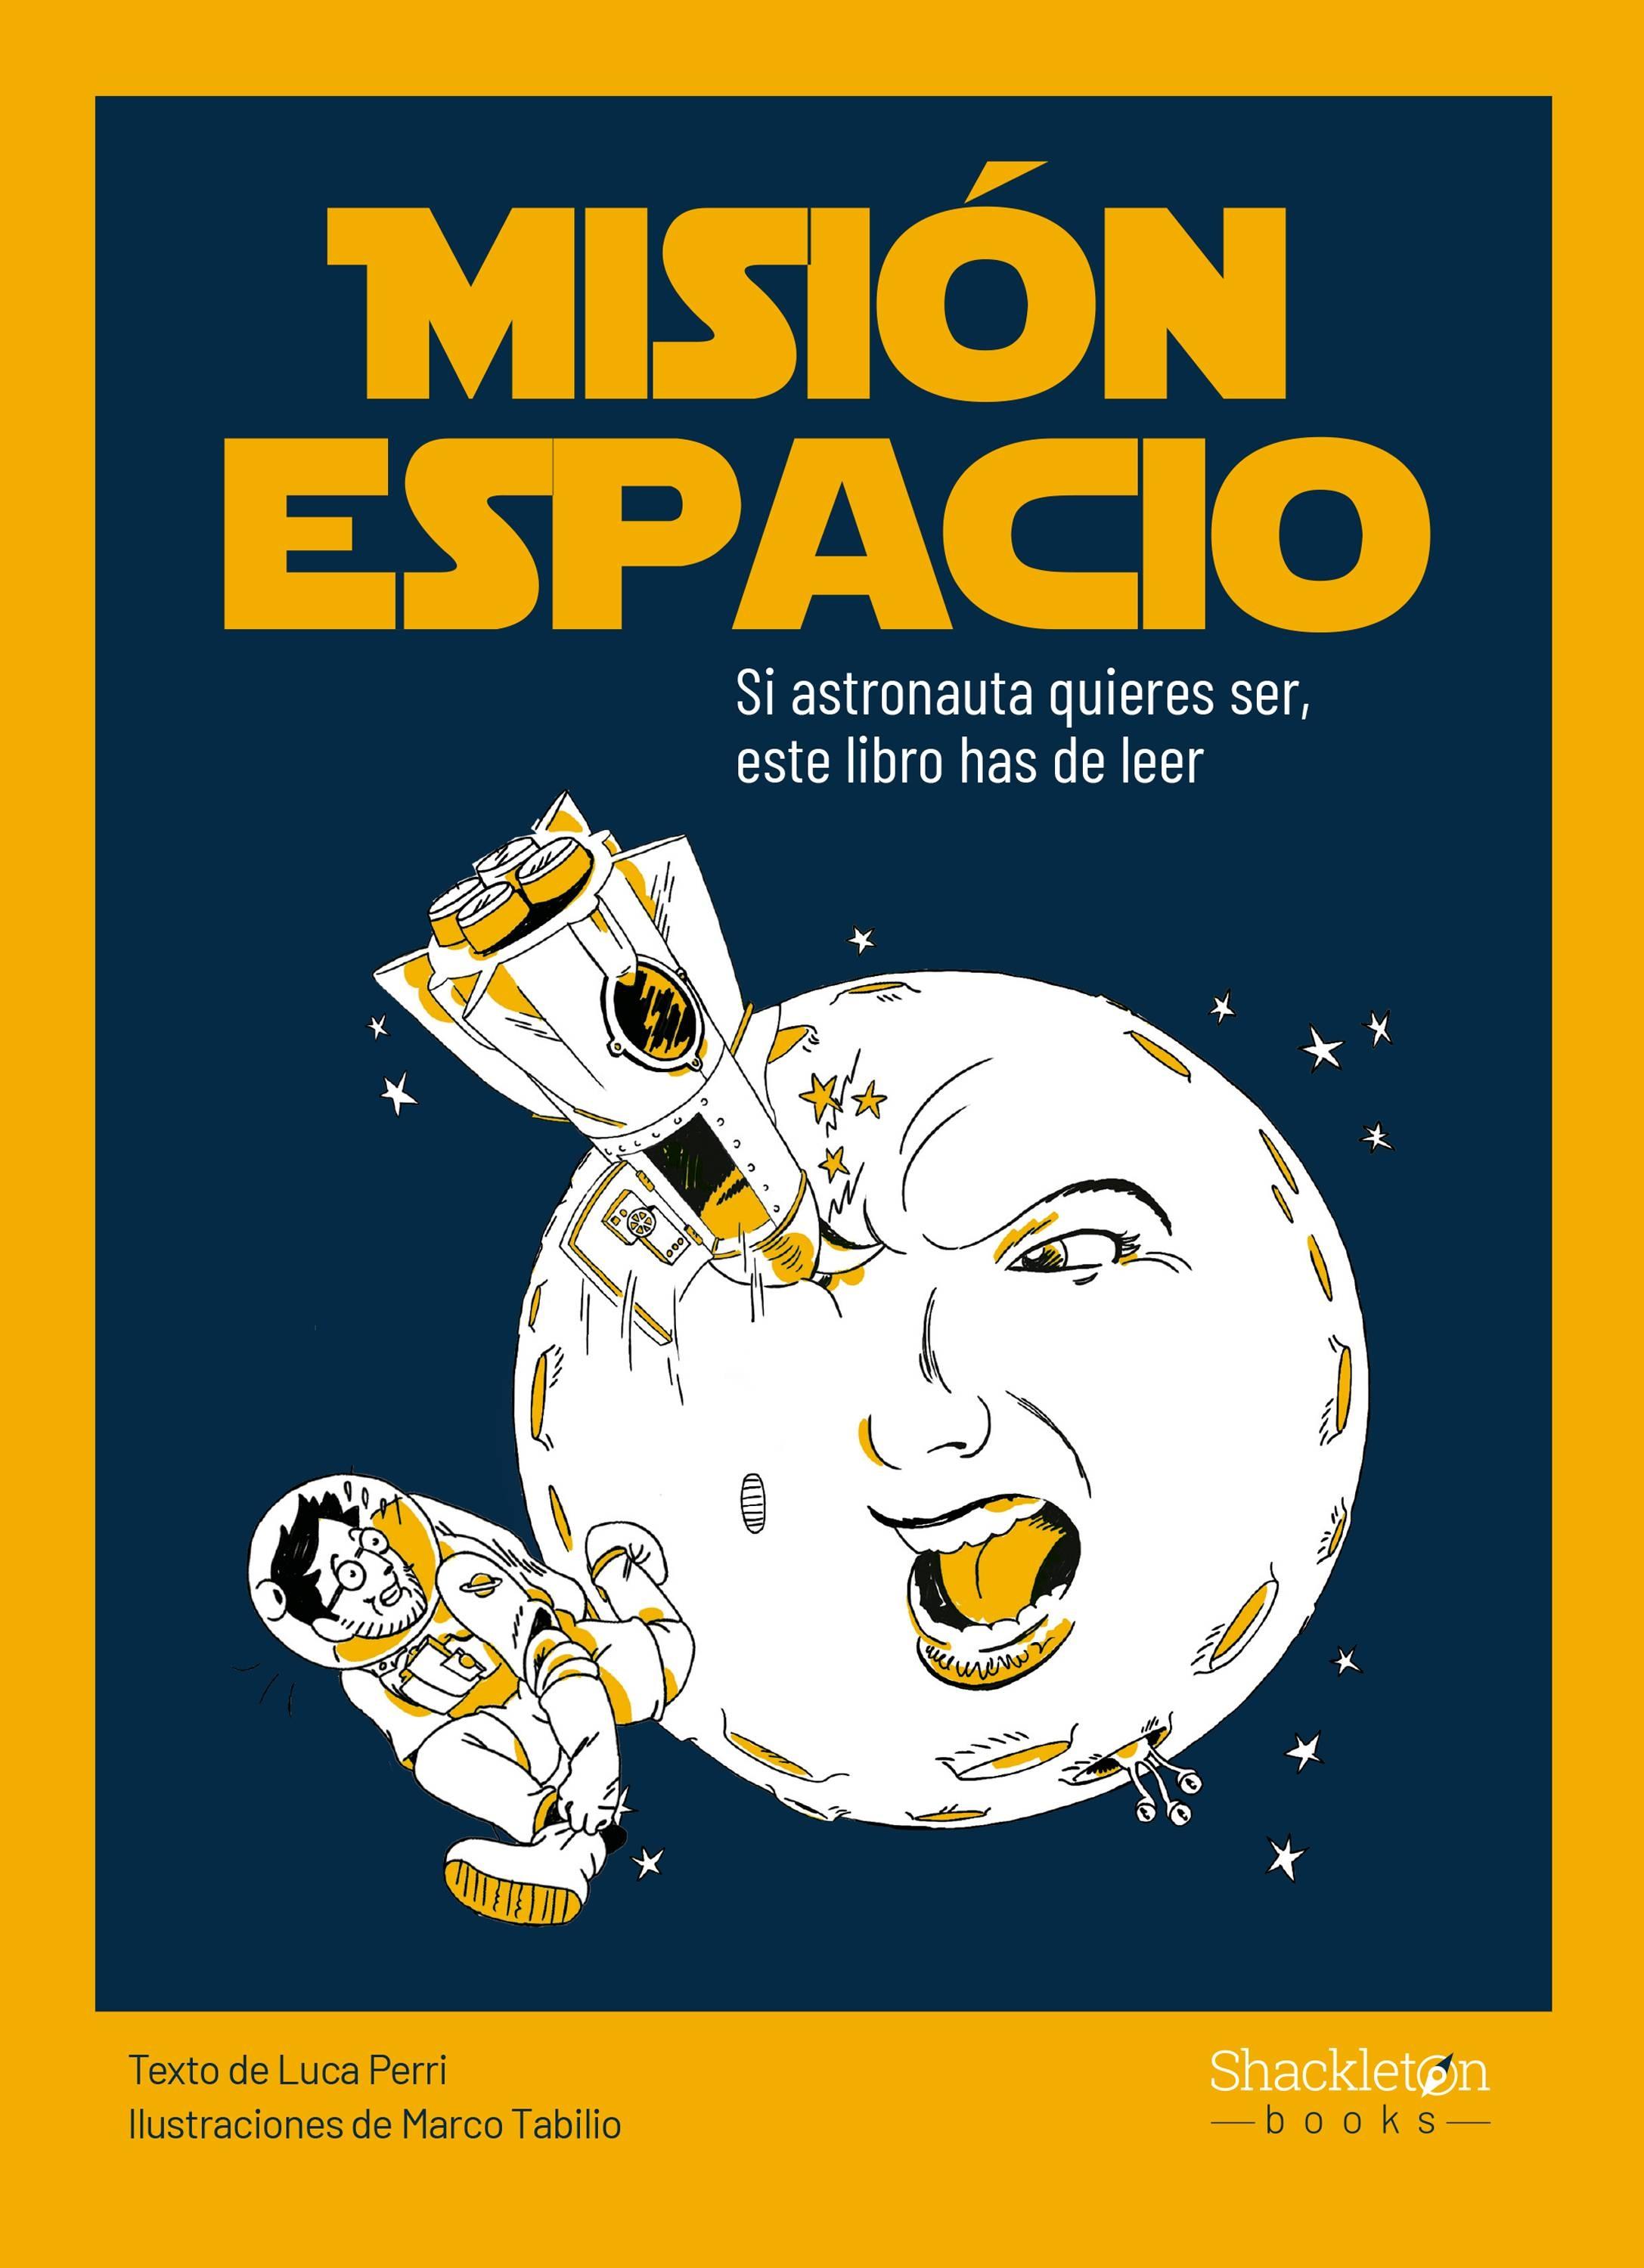 Misión espacio "Si austronauta quieres ser, este libro has de leer". 